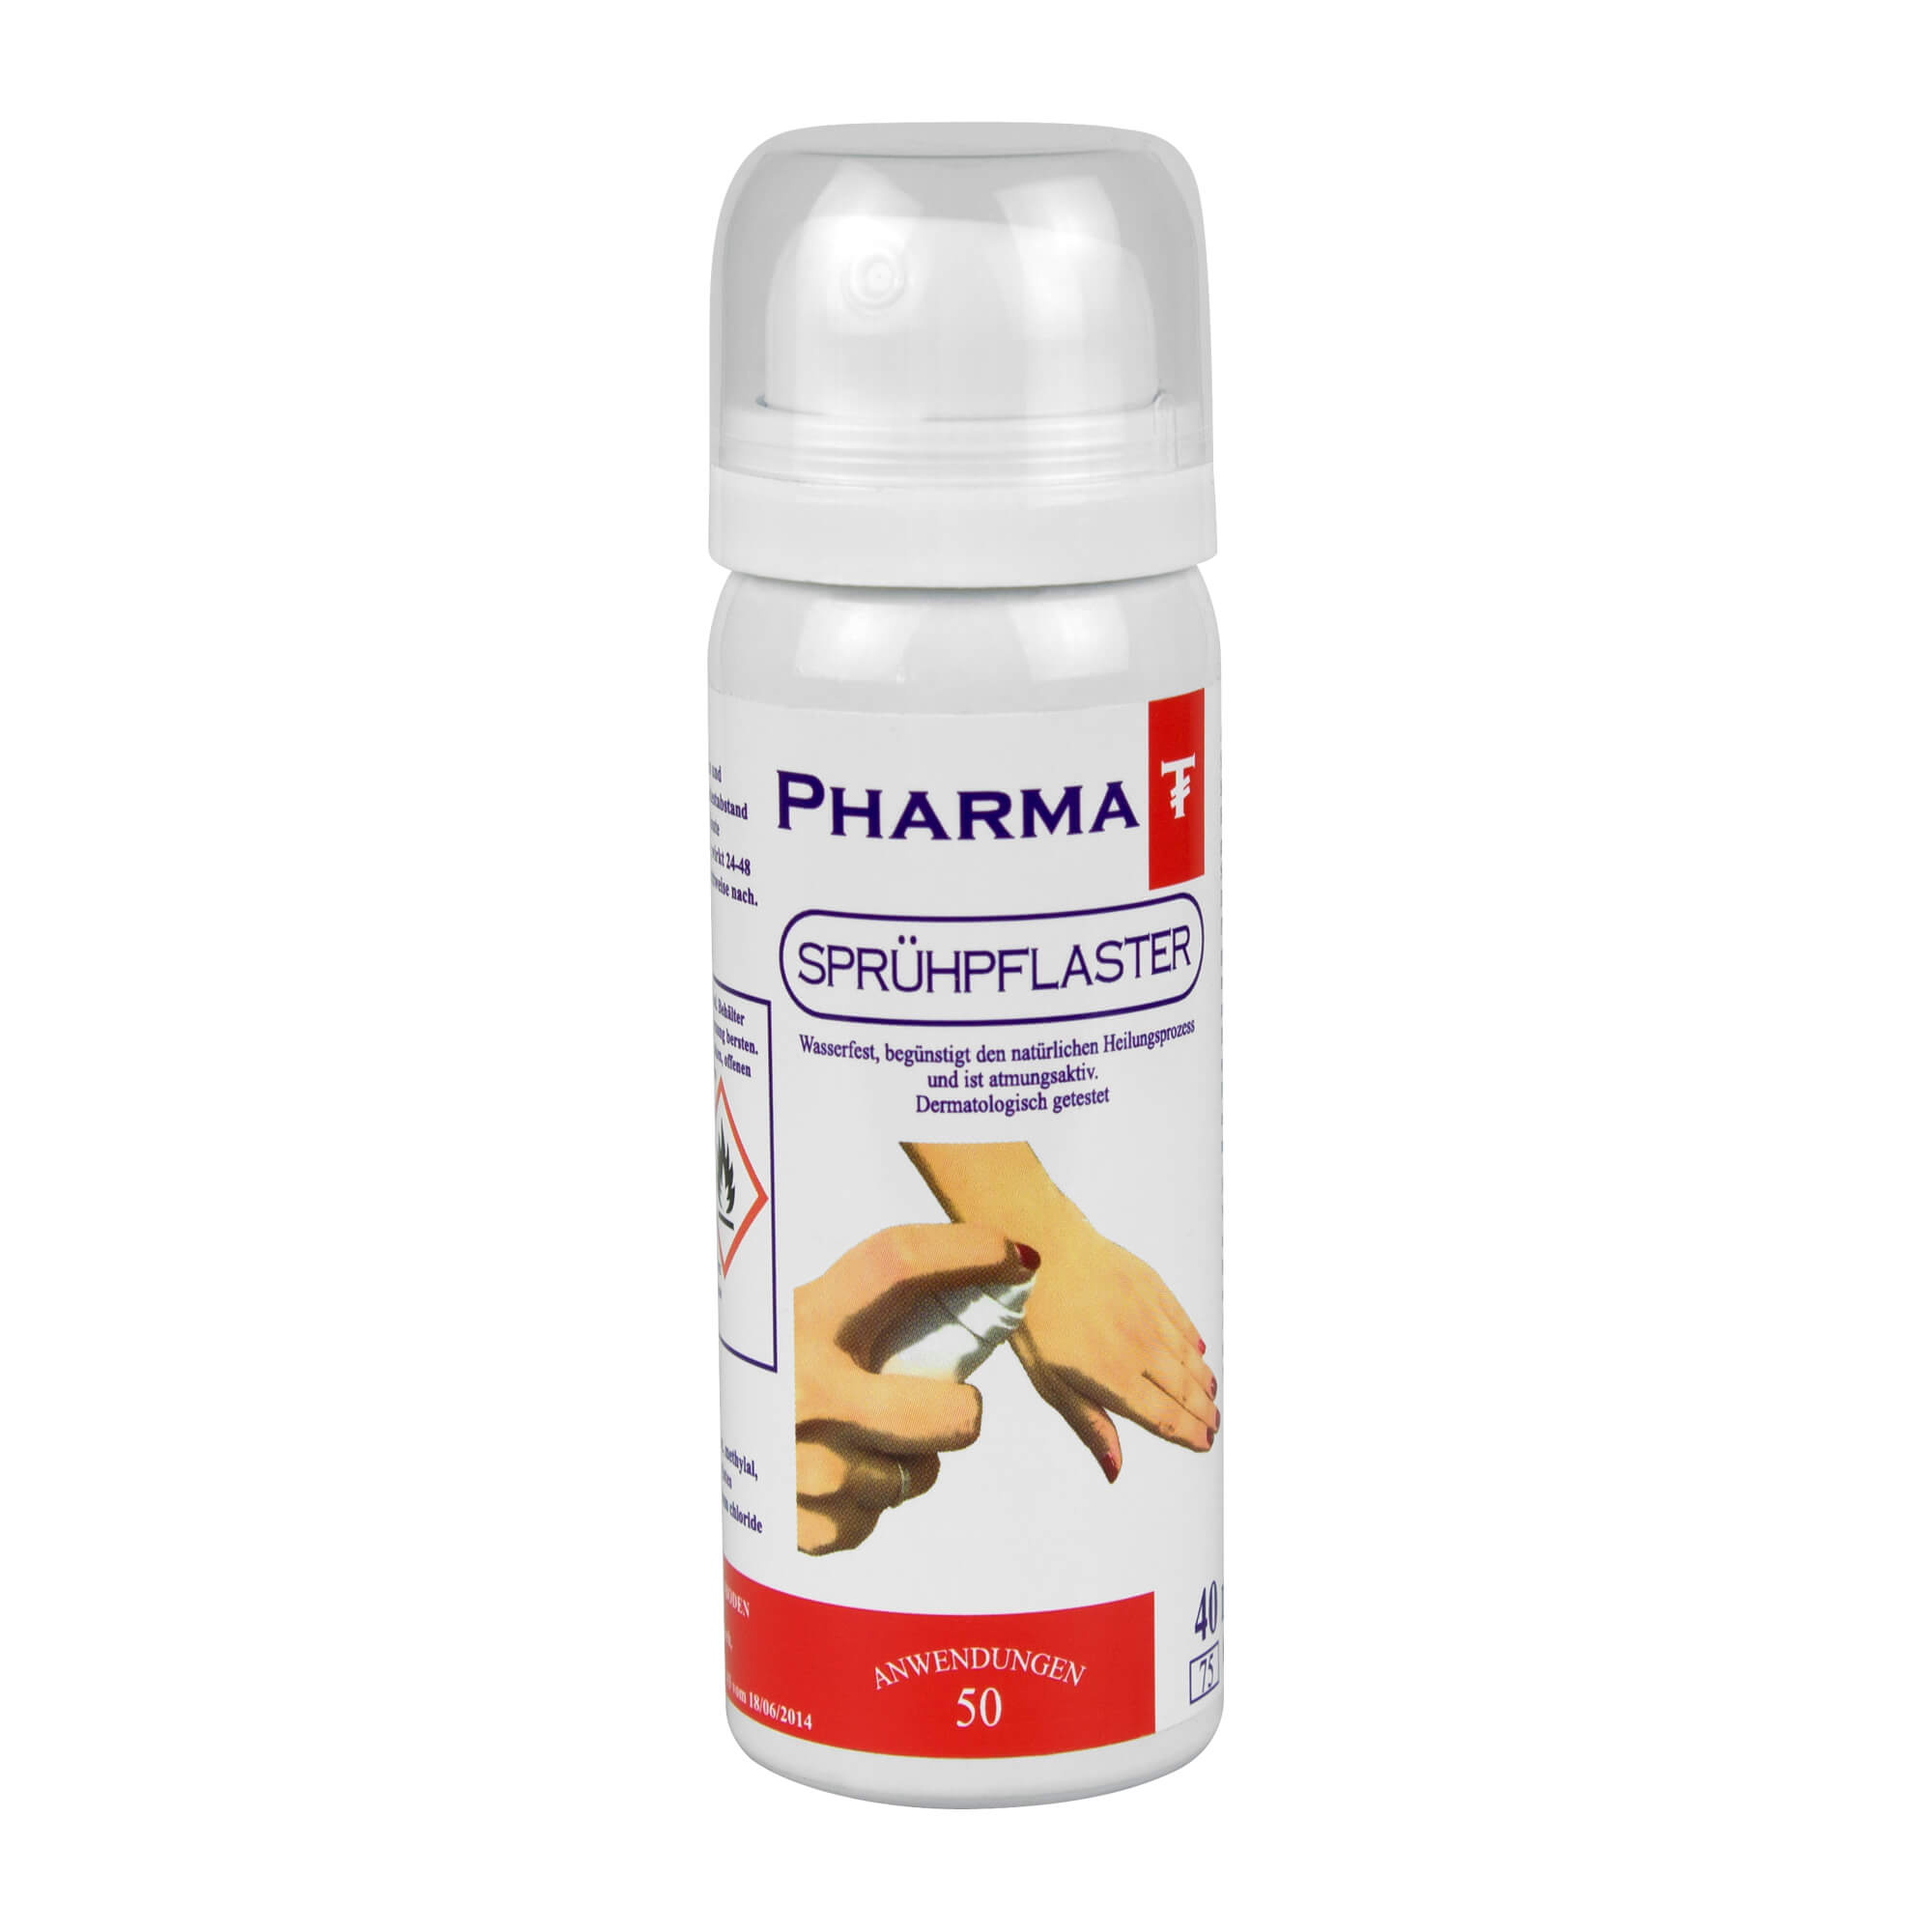 Pflaster mit Spray-Formel, das speziell zum Schutz der Haut bei oberflächlichen Verletzungen und gegen äußere Einwirkungen (Wasser, Schmutz, Bakterien etc.) entwickelt wurde.